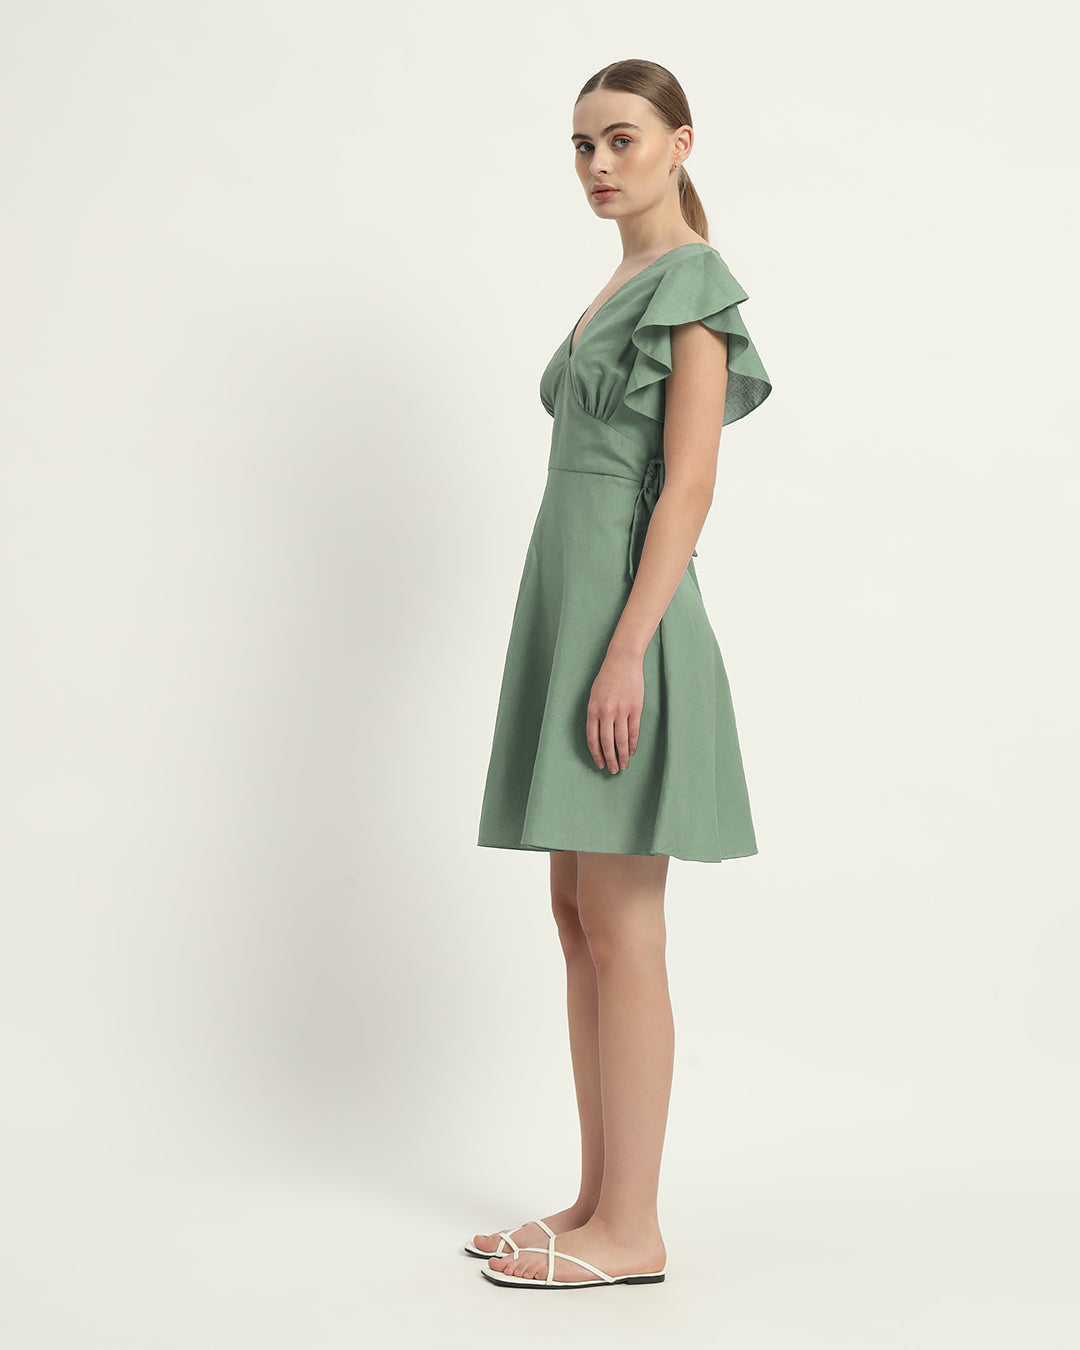 The Mint Fairlie Cotton Dress